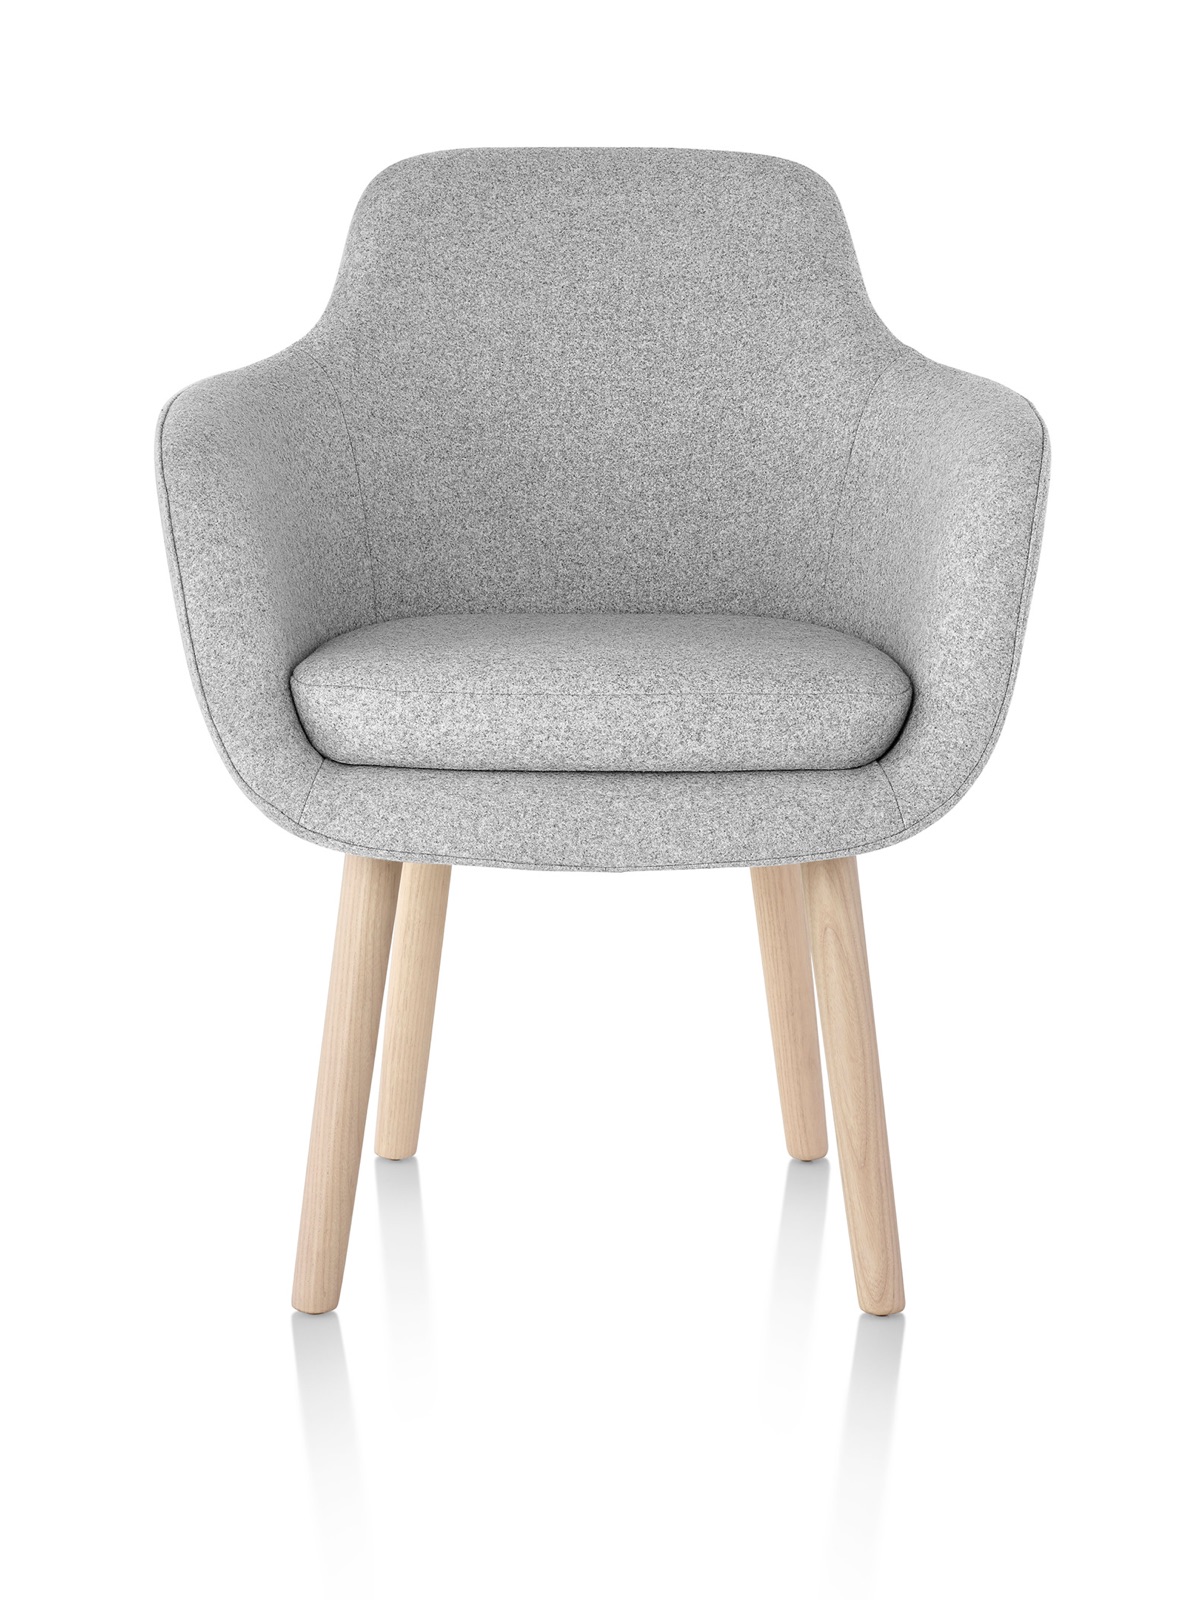 Une chaise Saiba Side Chair gris clair, avec un siège baquet rembourré et des jambes en bois, vu de l'avant.